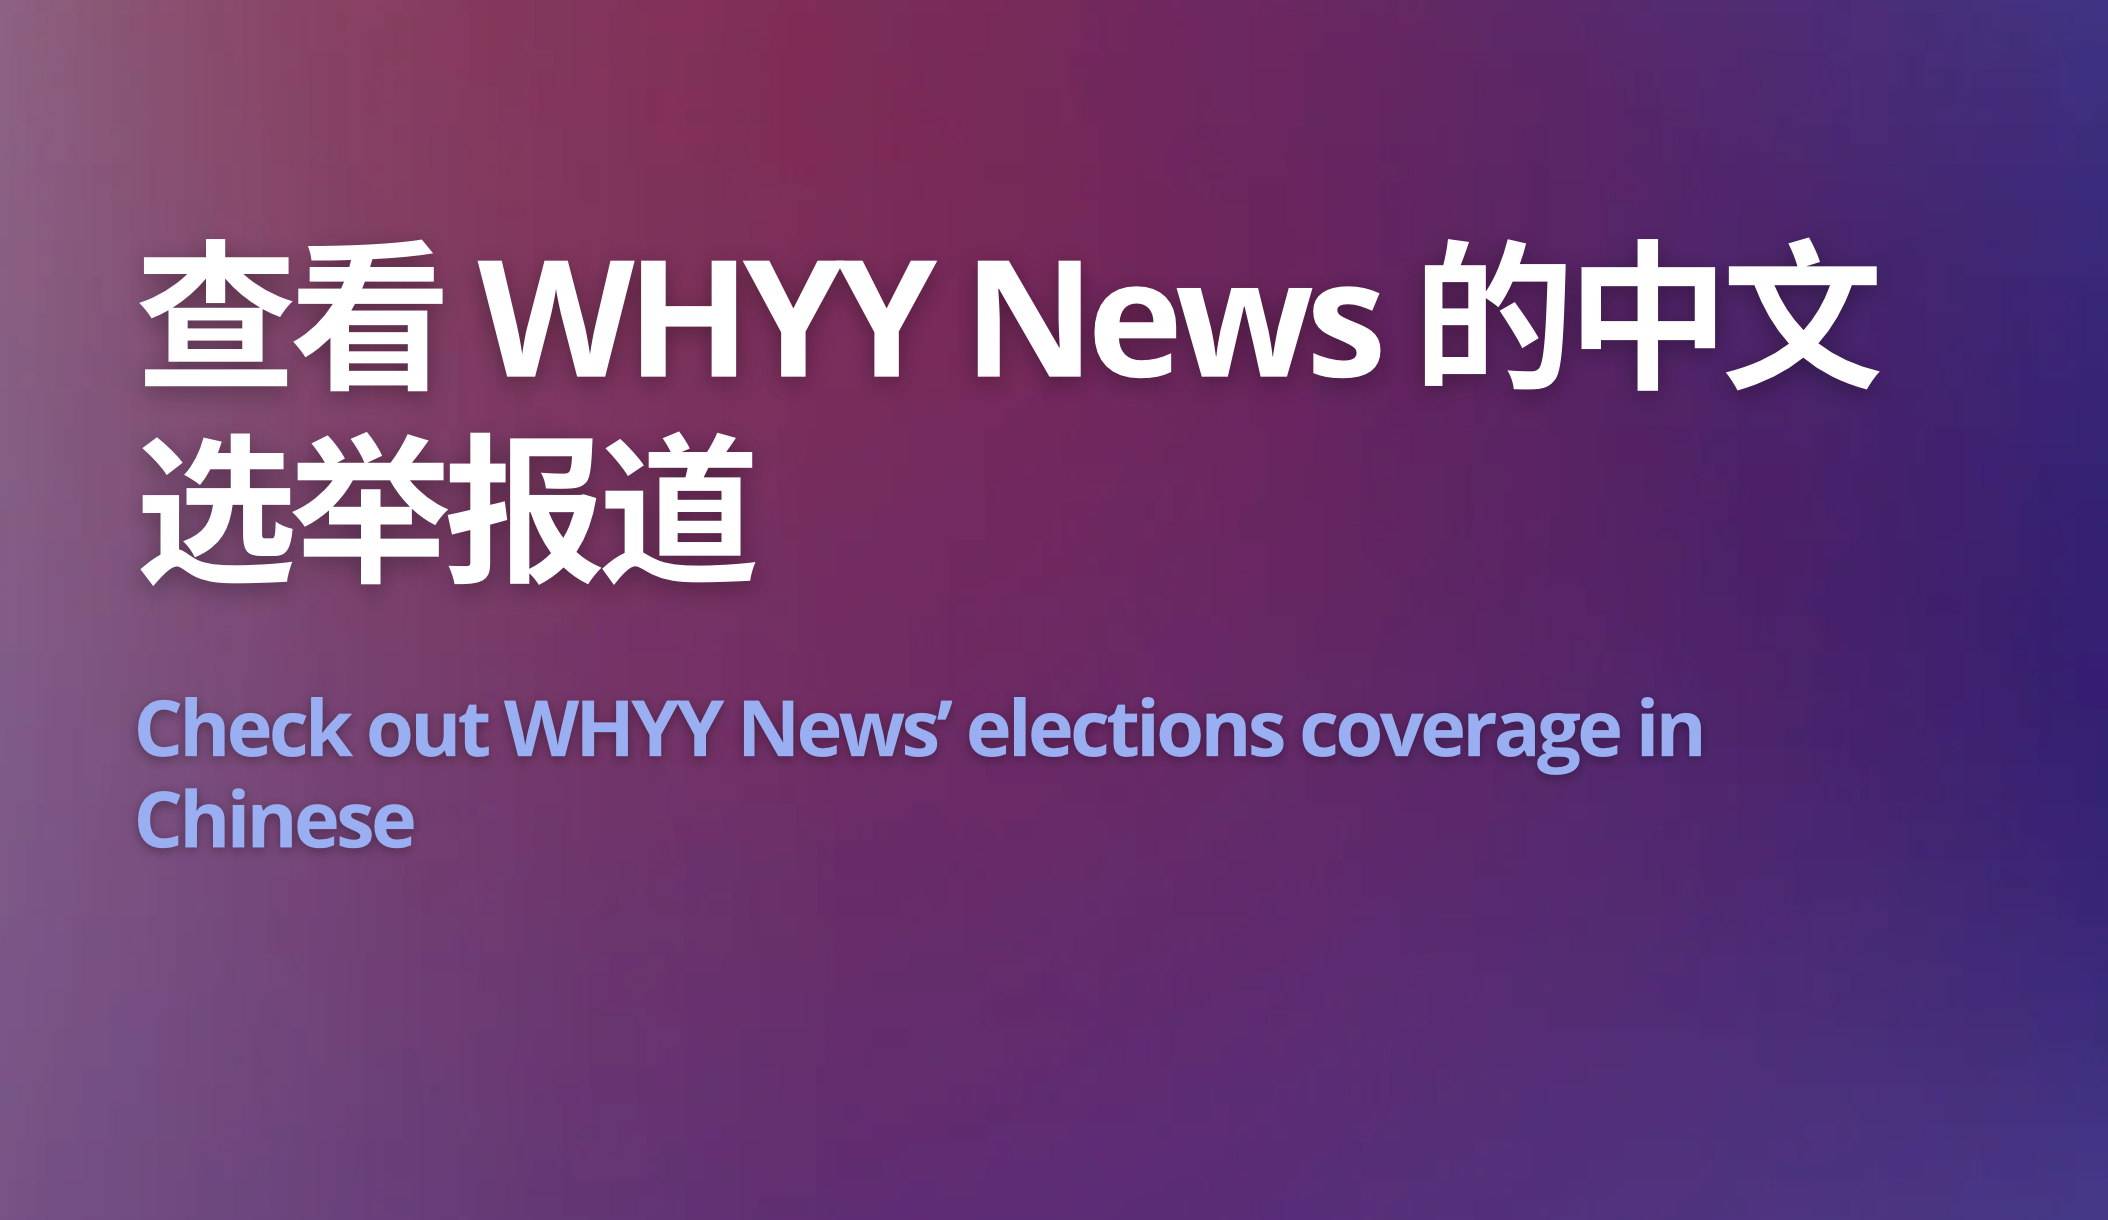 لماذا تظهر اللغات الصينية والعربية والإسبانية في التغطية الإخبارية للانتخابات؟